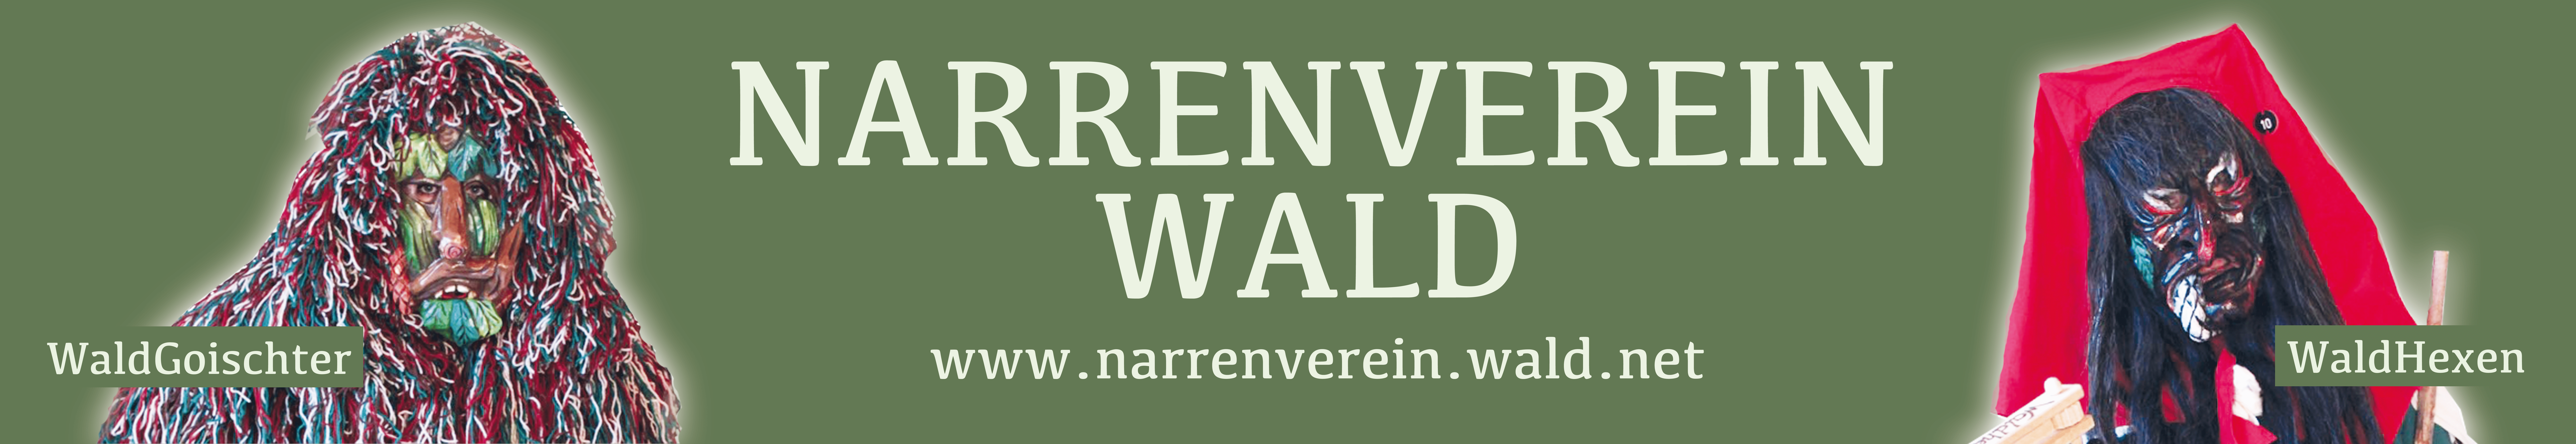 Waldgoischter Banner